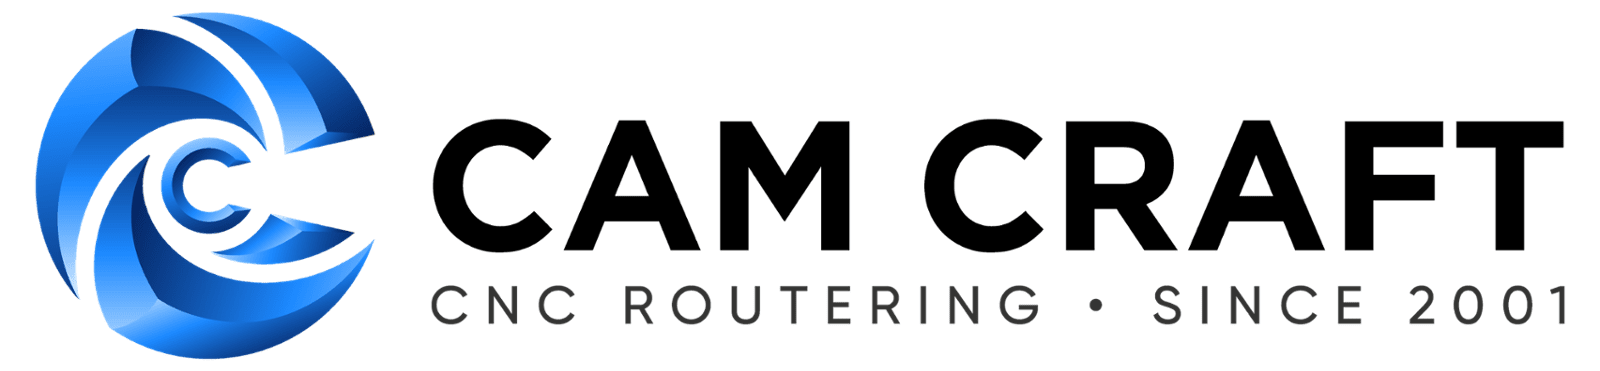 Cam Craft DSL Telecom voice customer